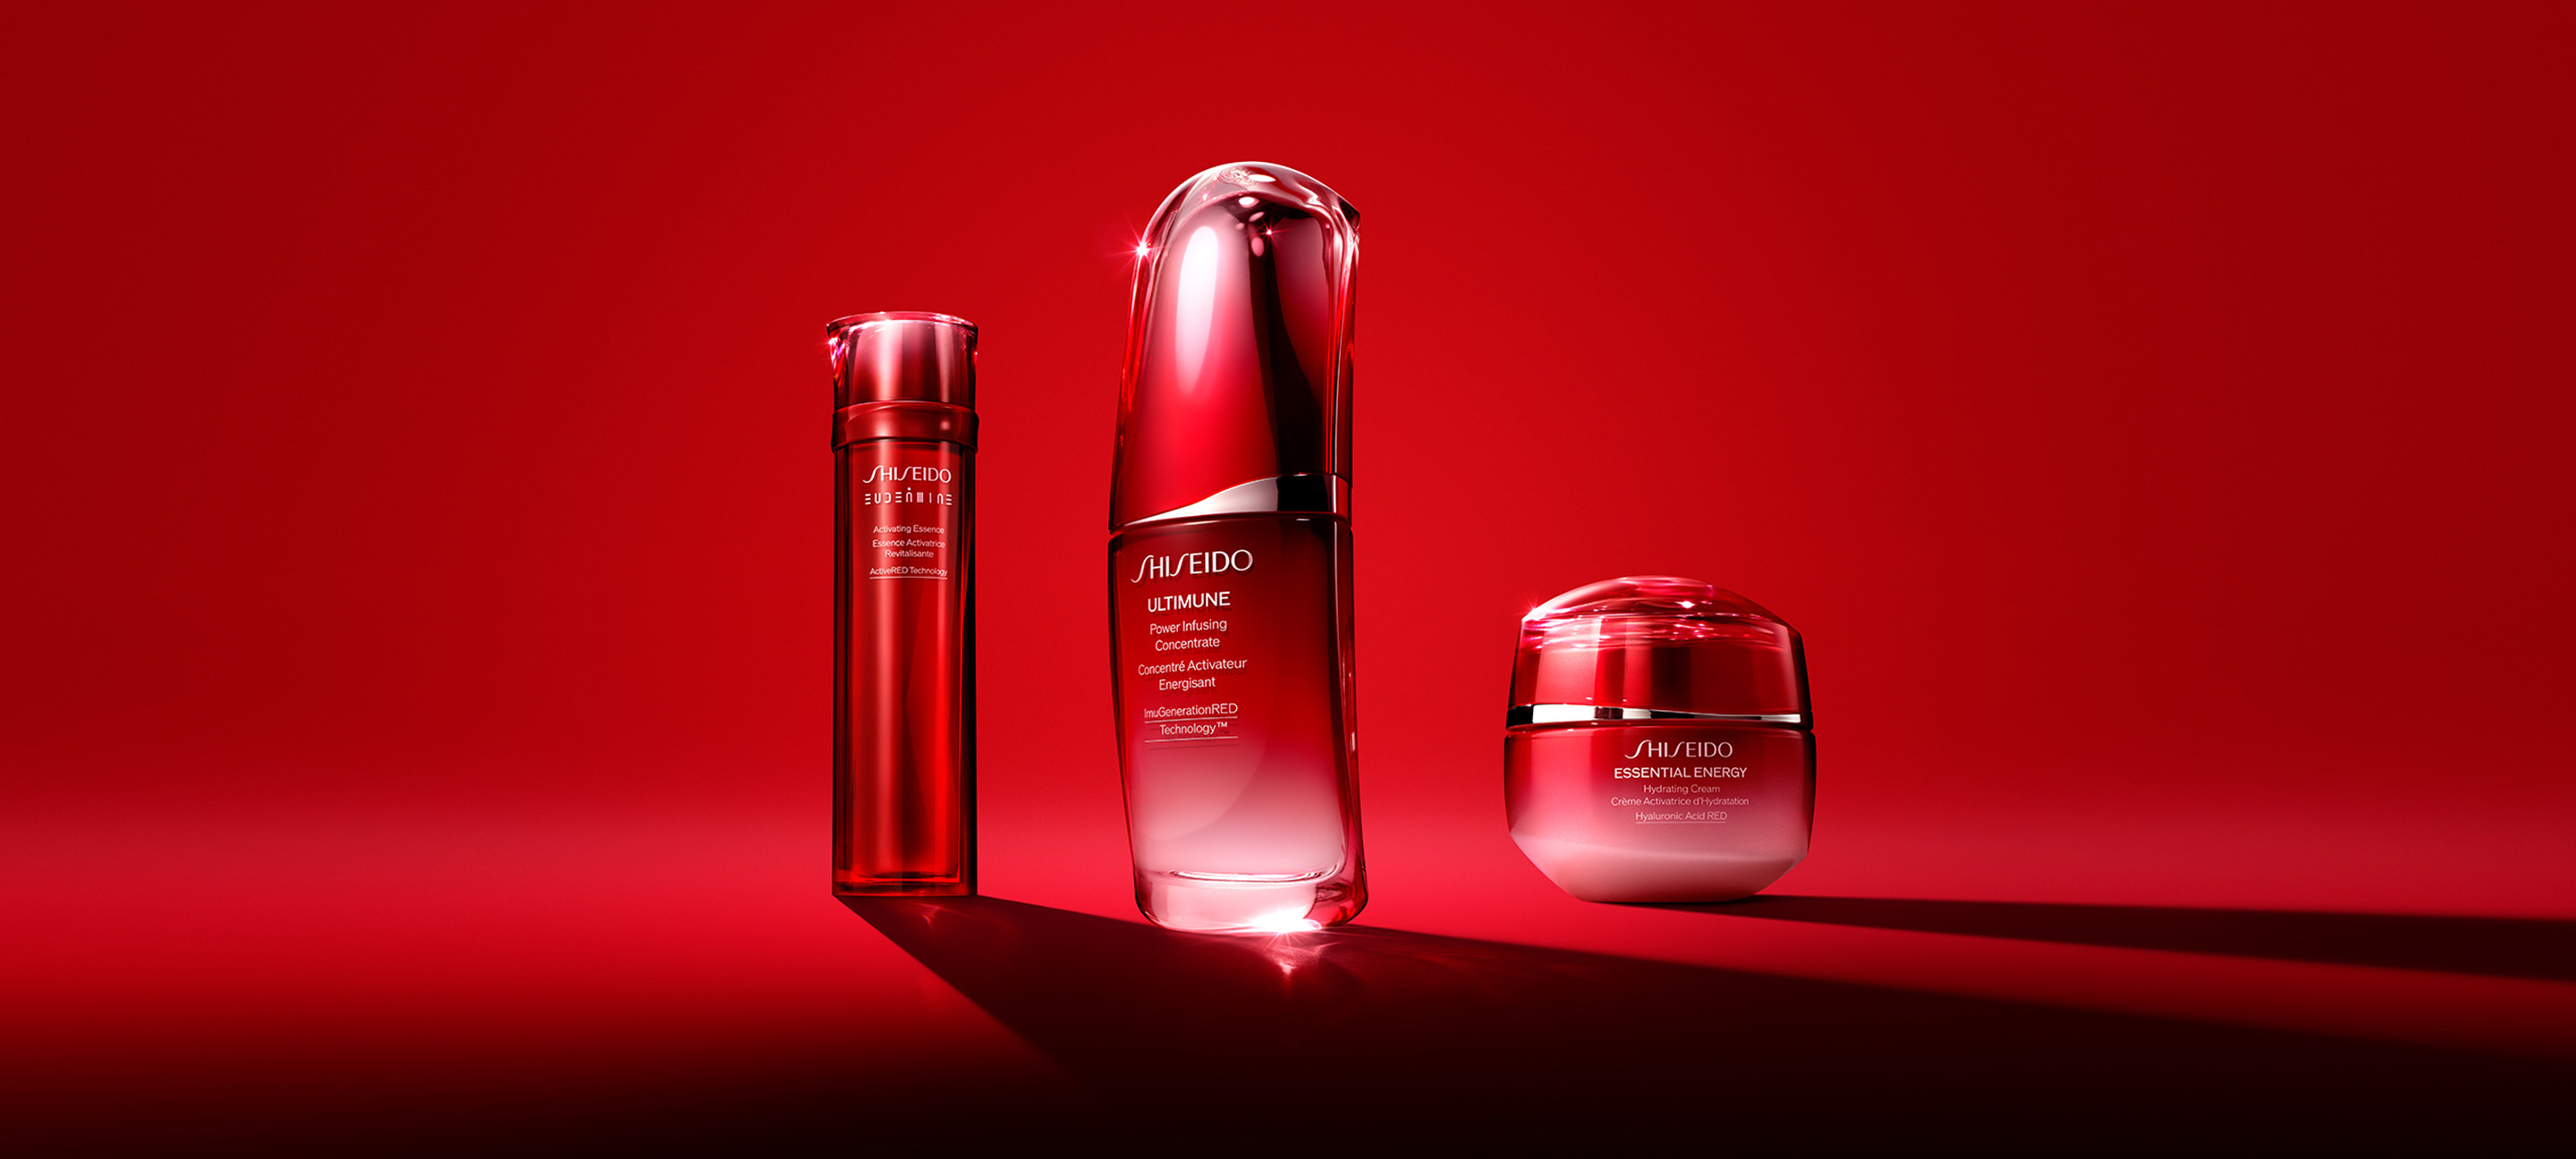 Shiseido Brands Shiseido Company